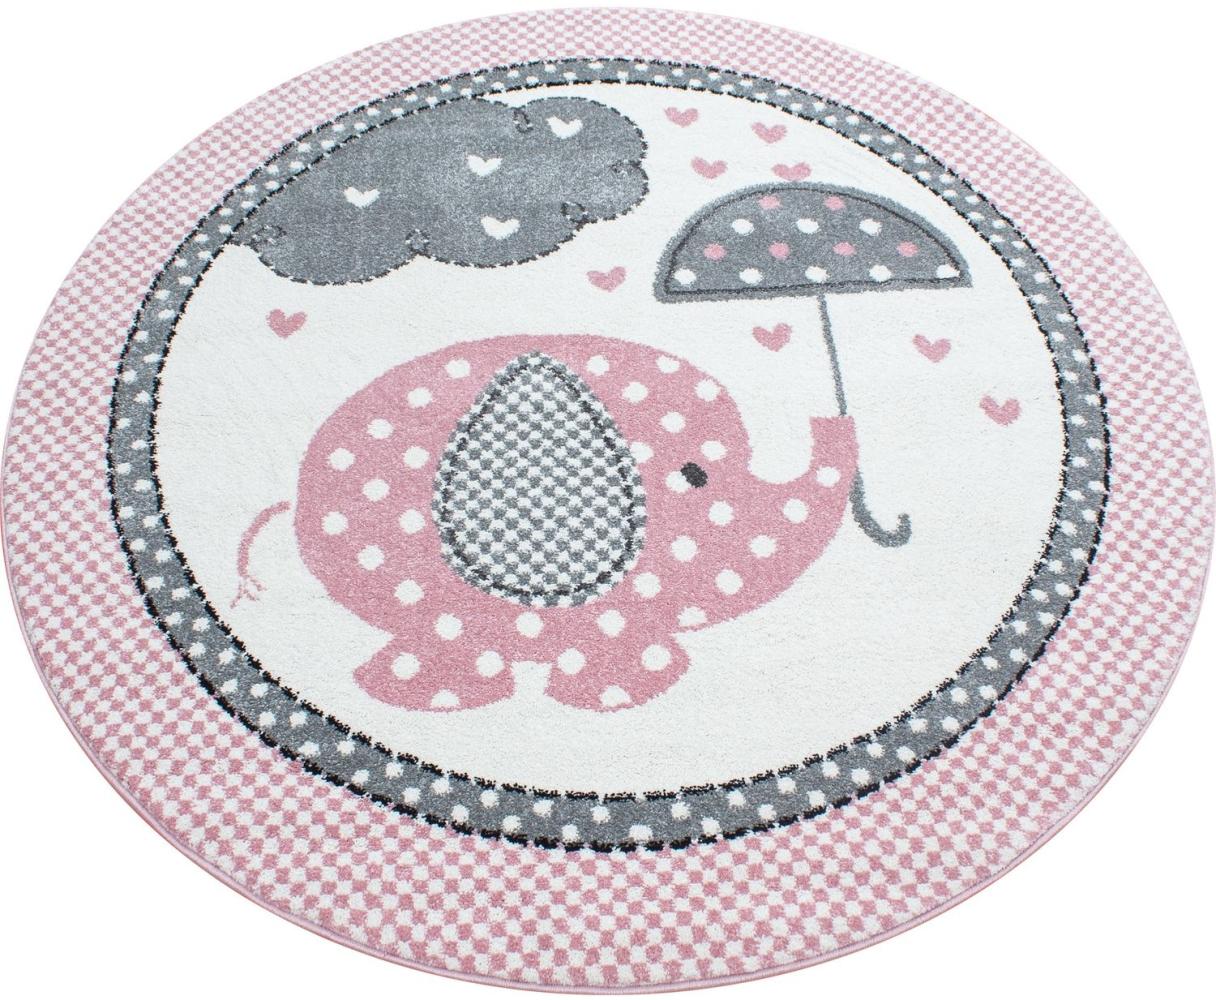 Kinder Teppich Kikki rund - 120 cm Durchmesser - Pink Bild 1